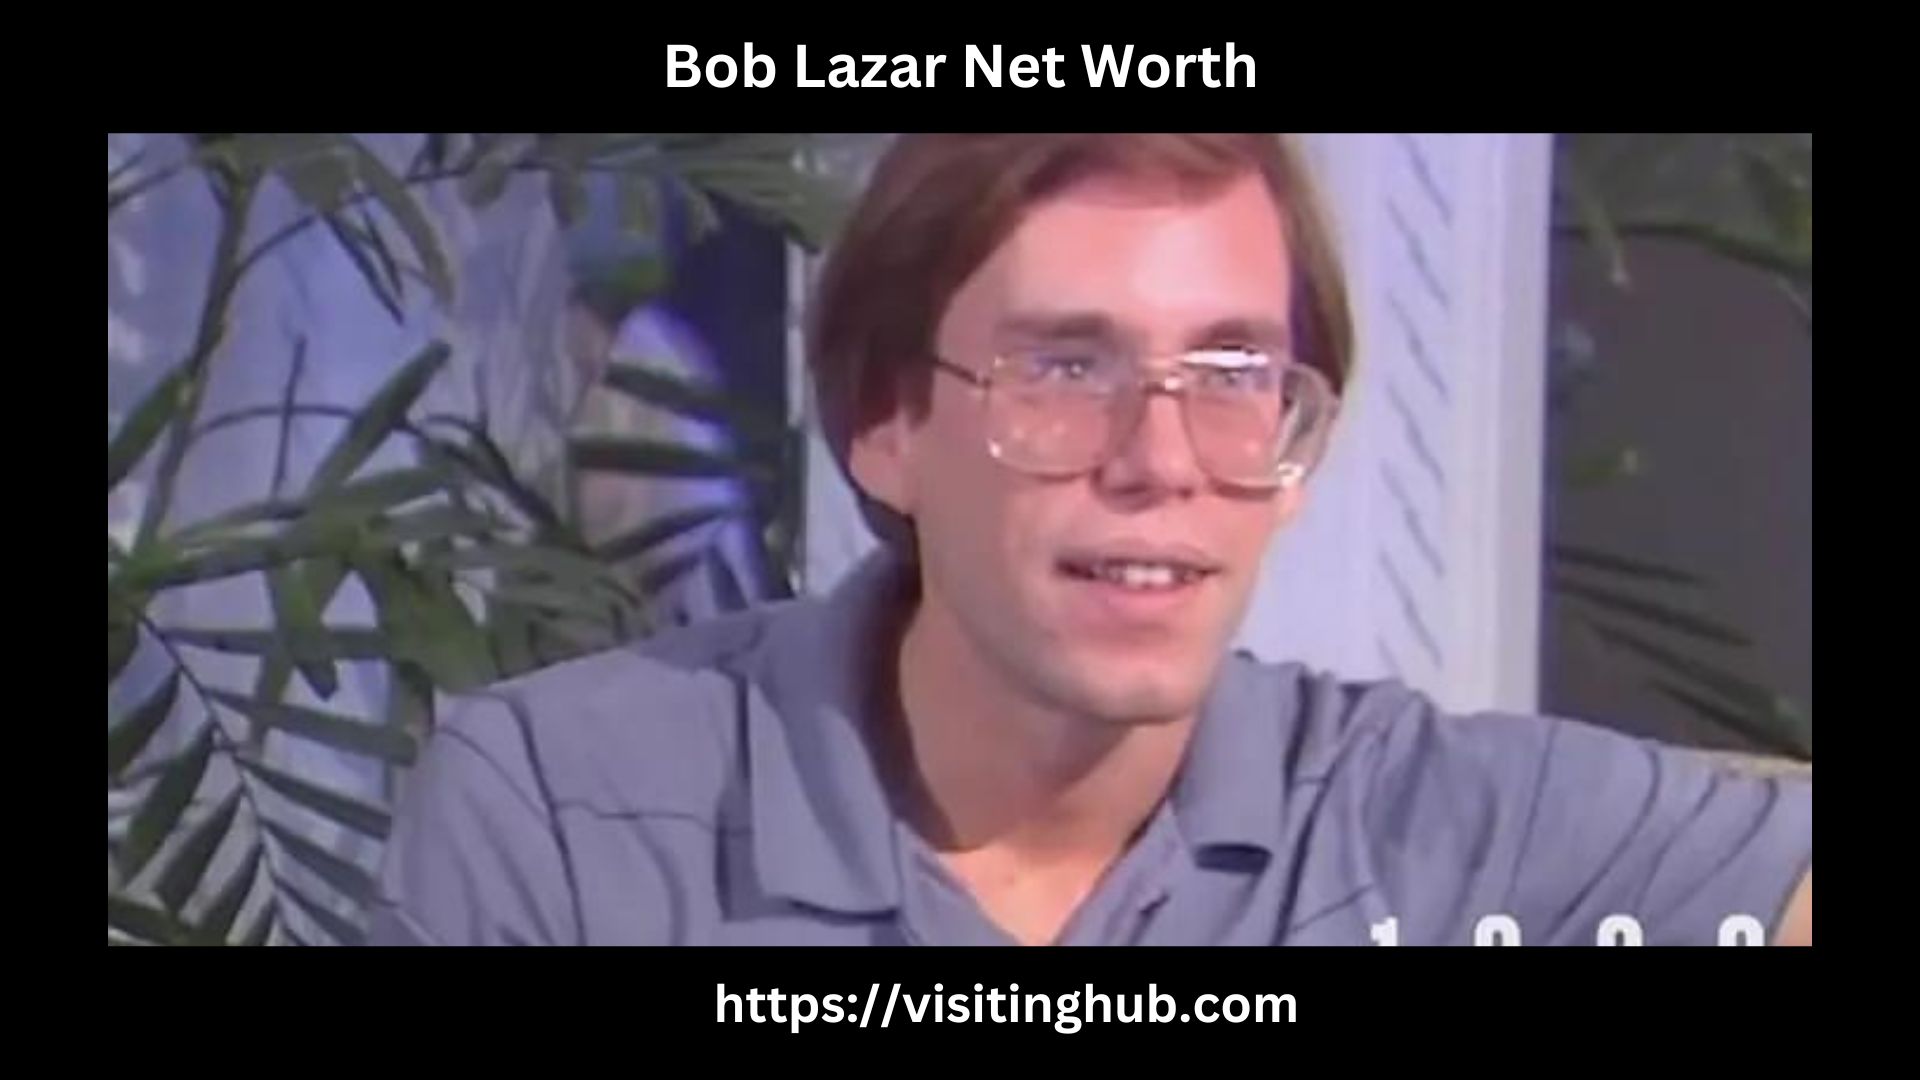 Bob Lazar Net Worth